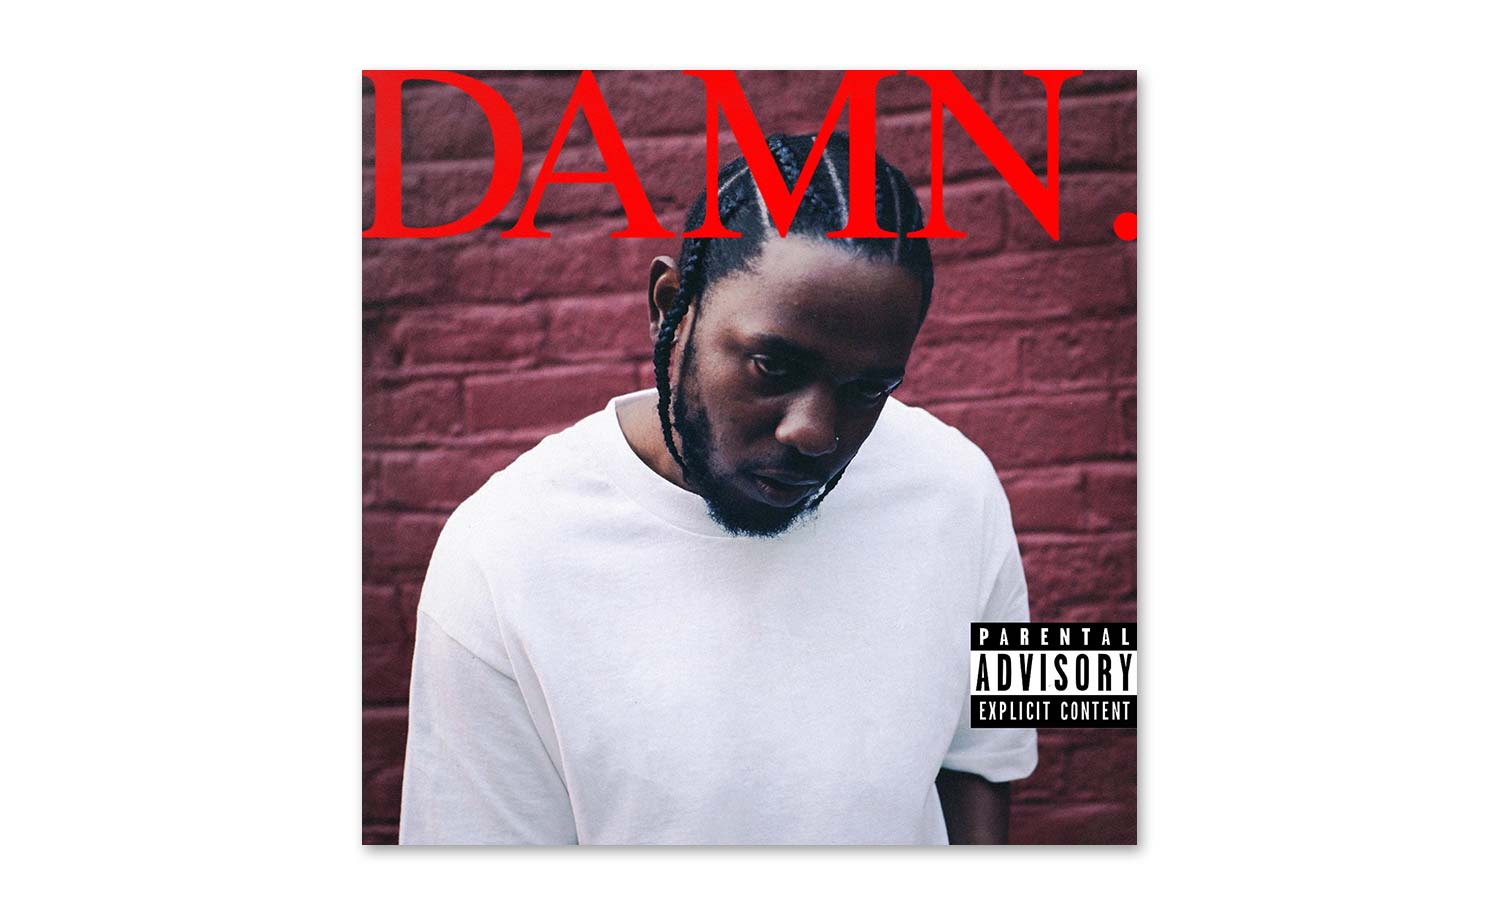 Kendrick Lamar reveals new album title, tracklist and artwork